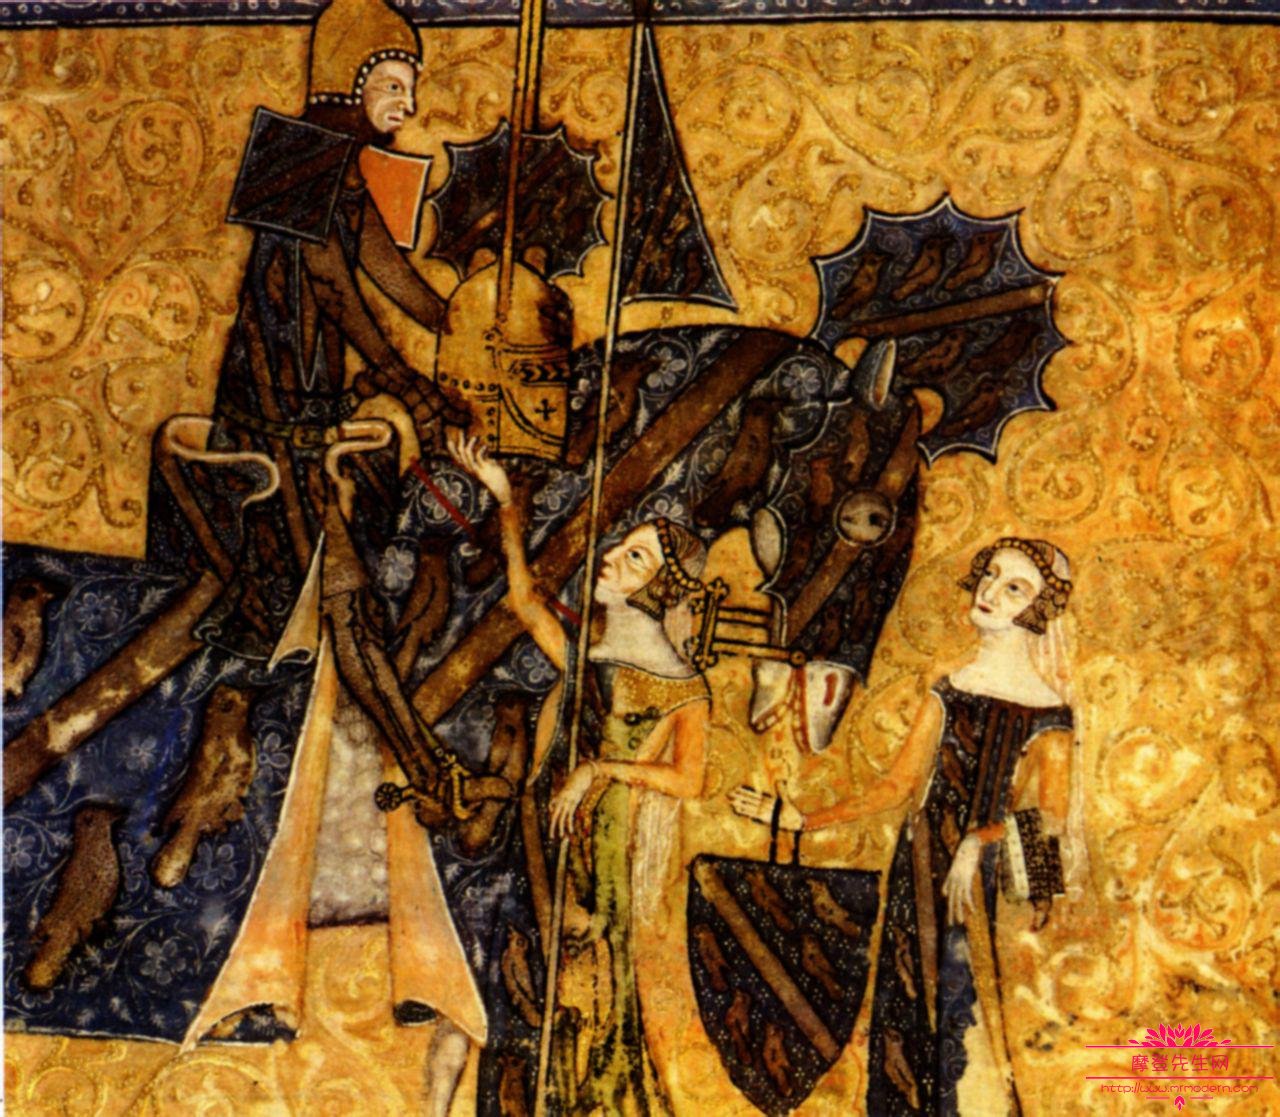 中世纪真实的盔甲设计图，中世纪的骑士精神指的是什么？